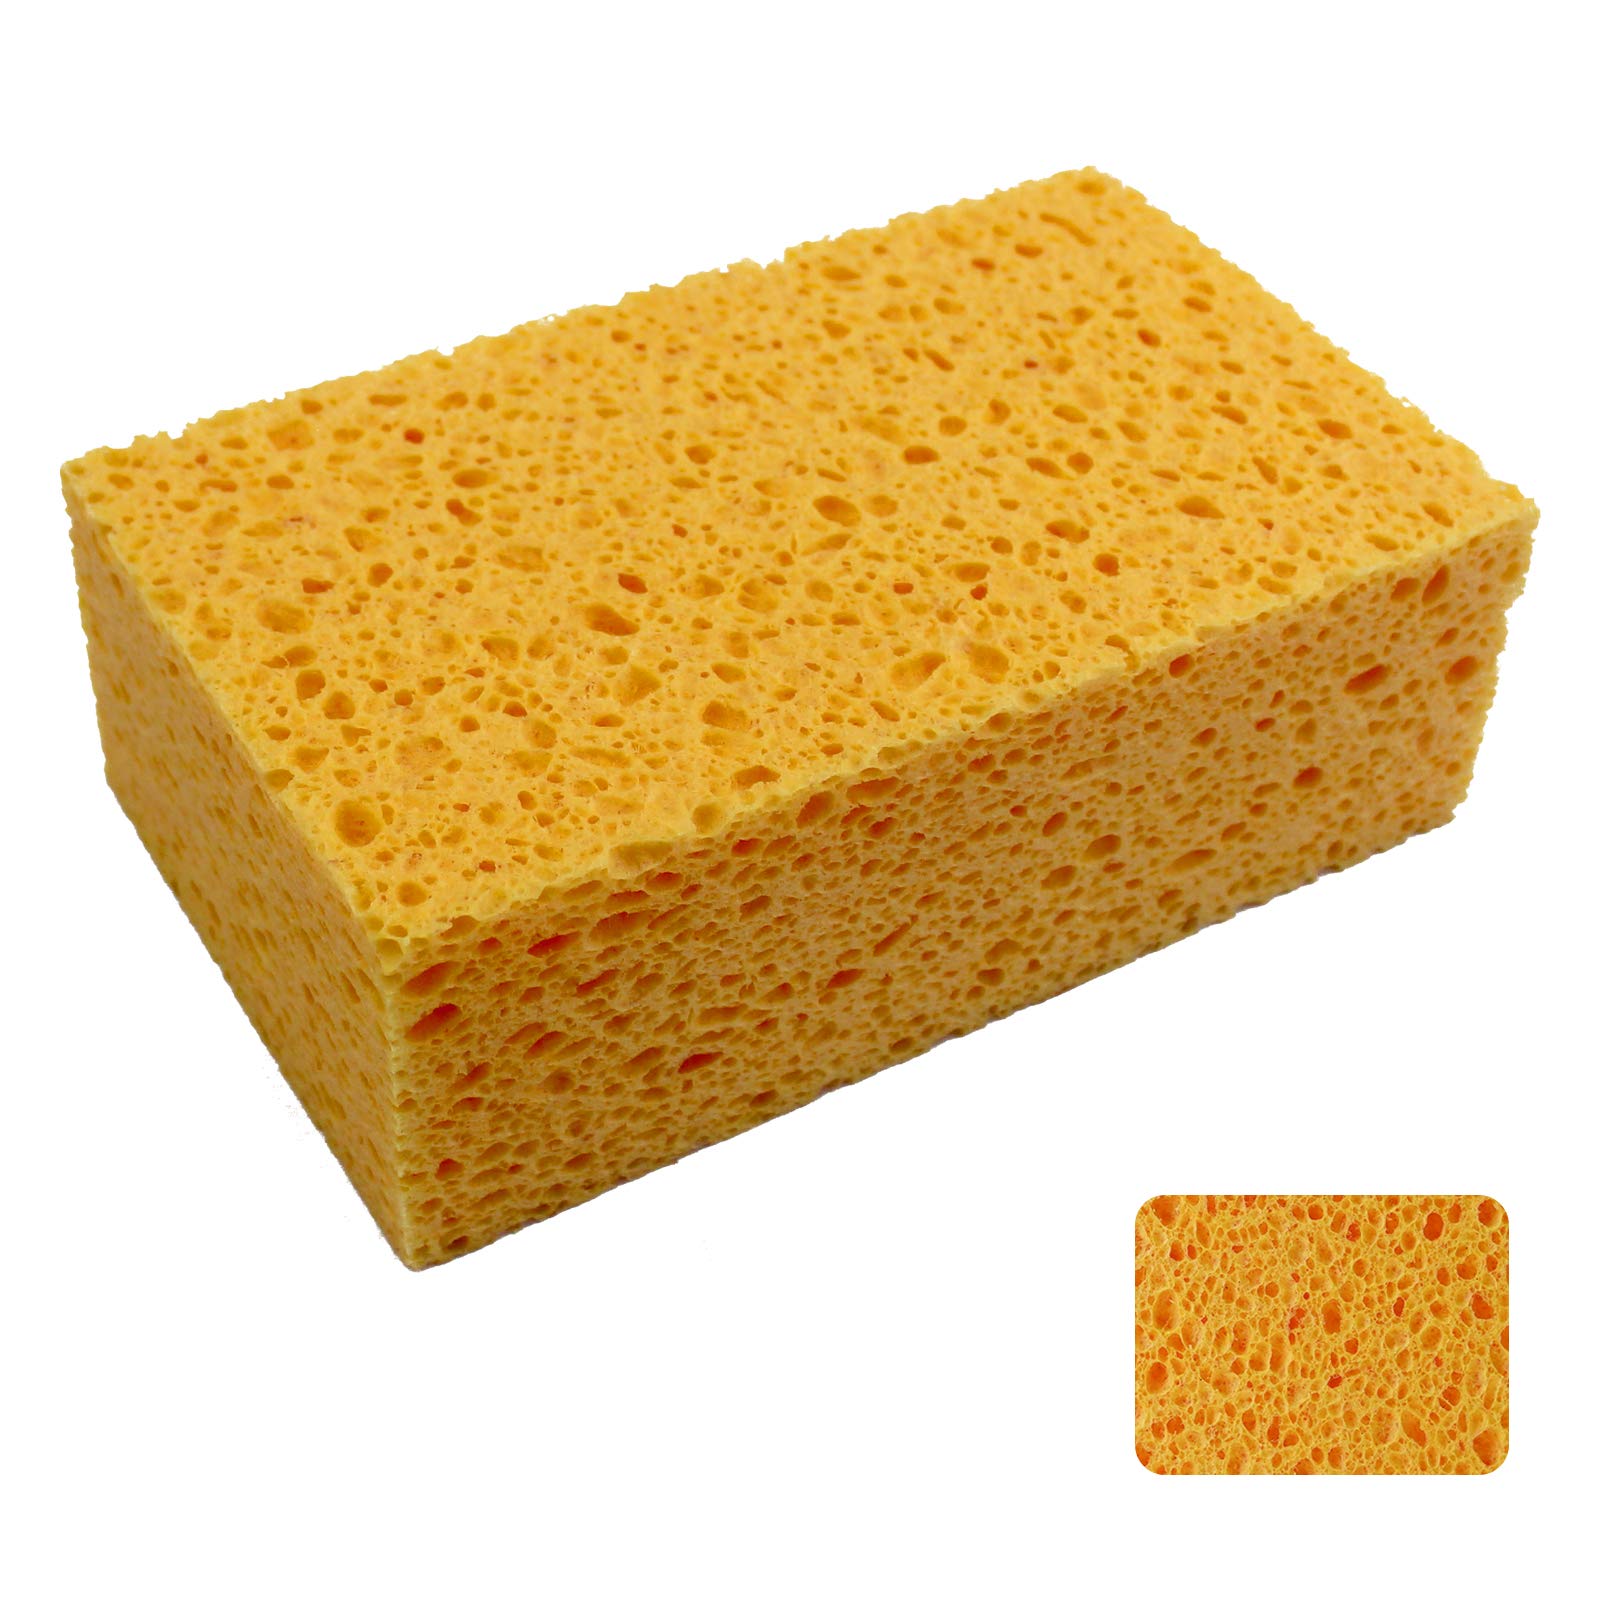 1 PCS x JK SP-T50 Large Sponge, Cleaning Sponges, Boat Bail Sponge